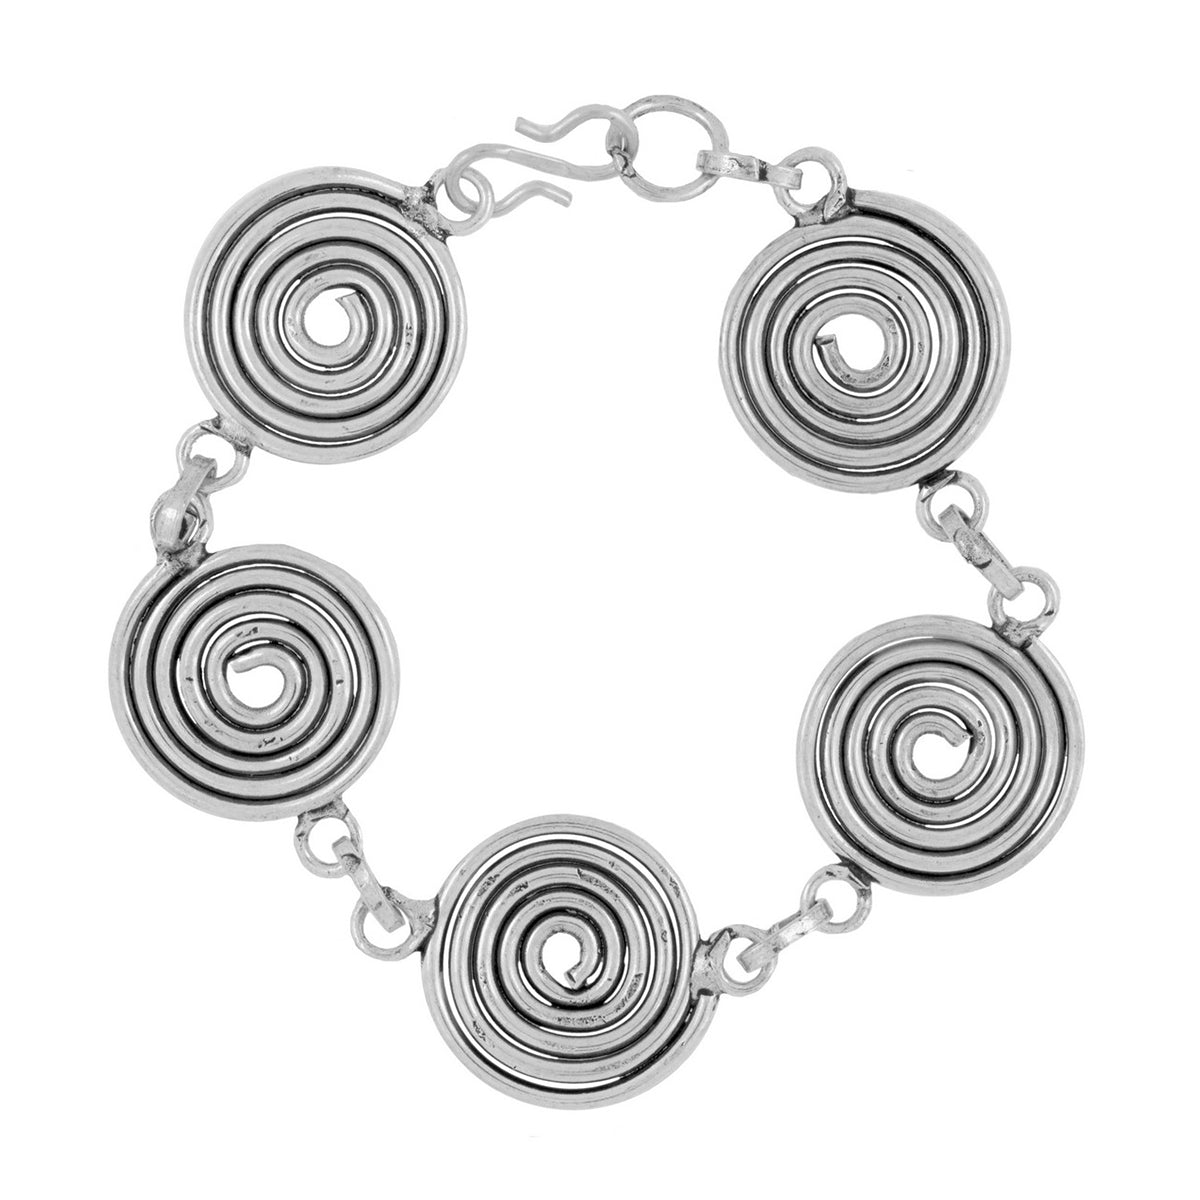 Oxidised Tribal Bohemian German Silver Necklace Earring Bracelet Set